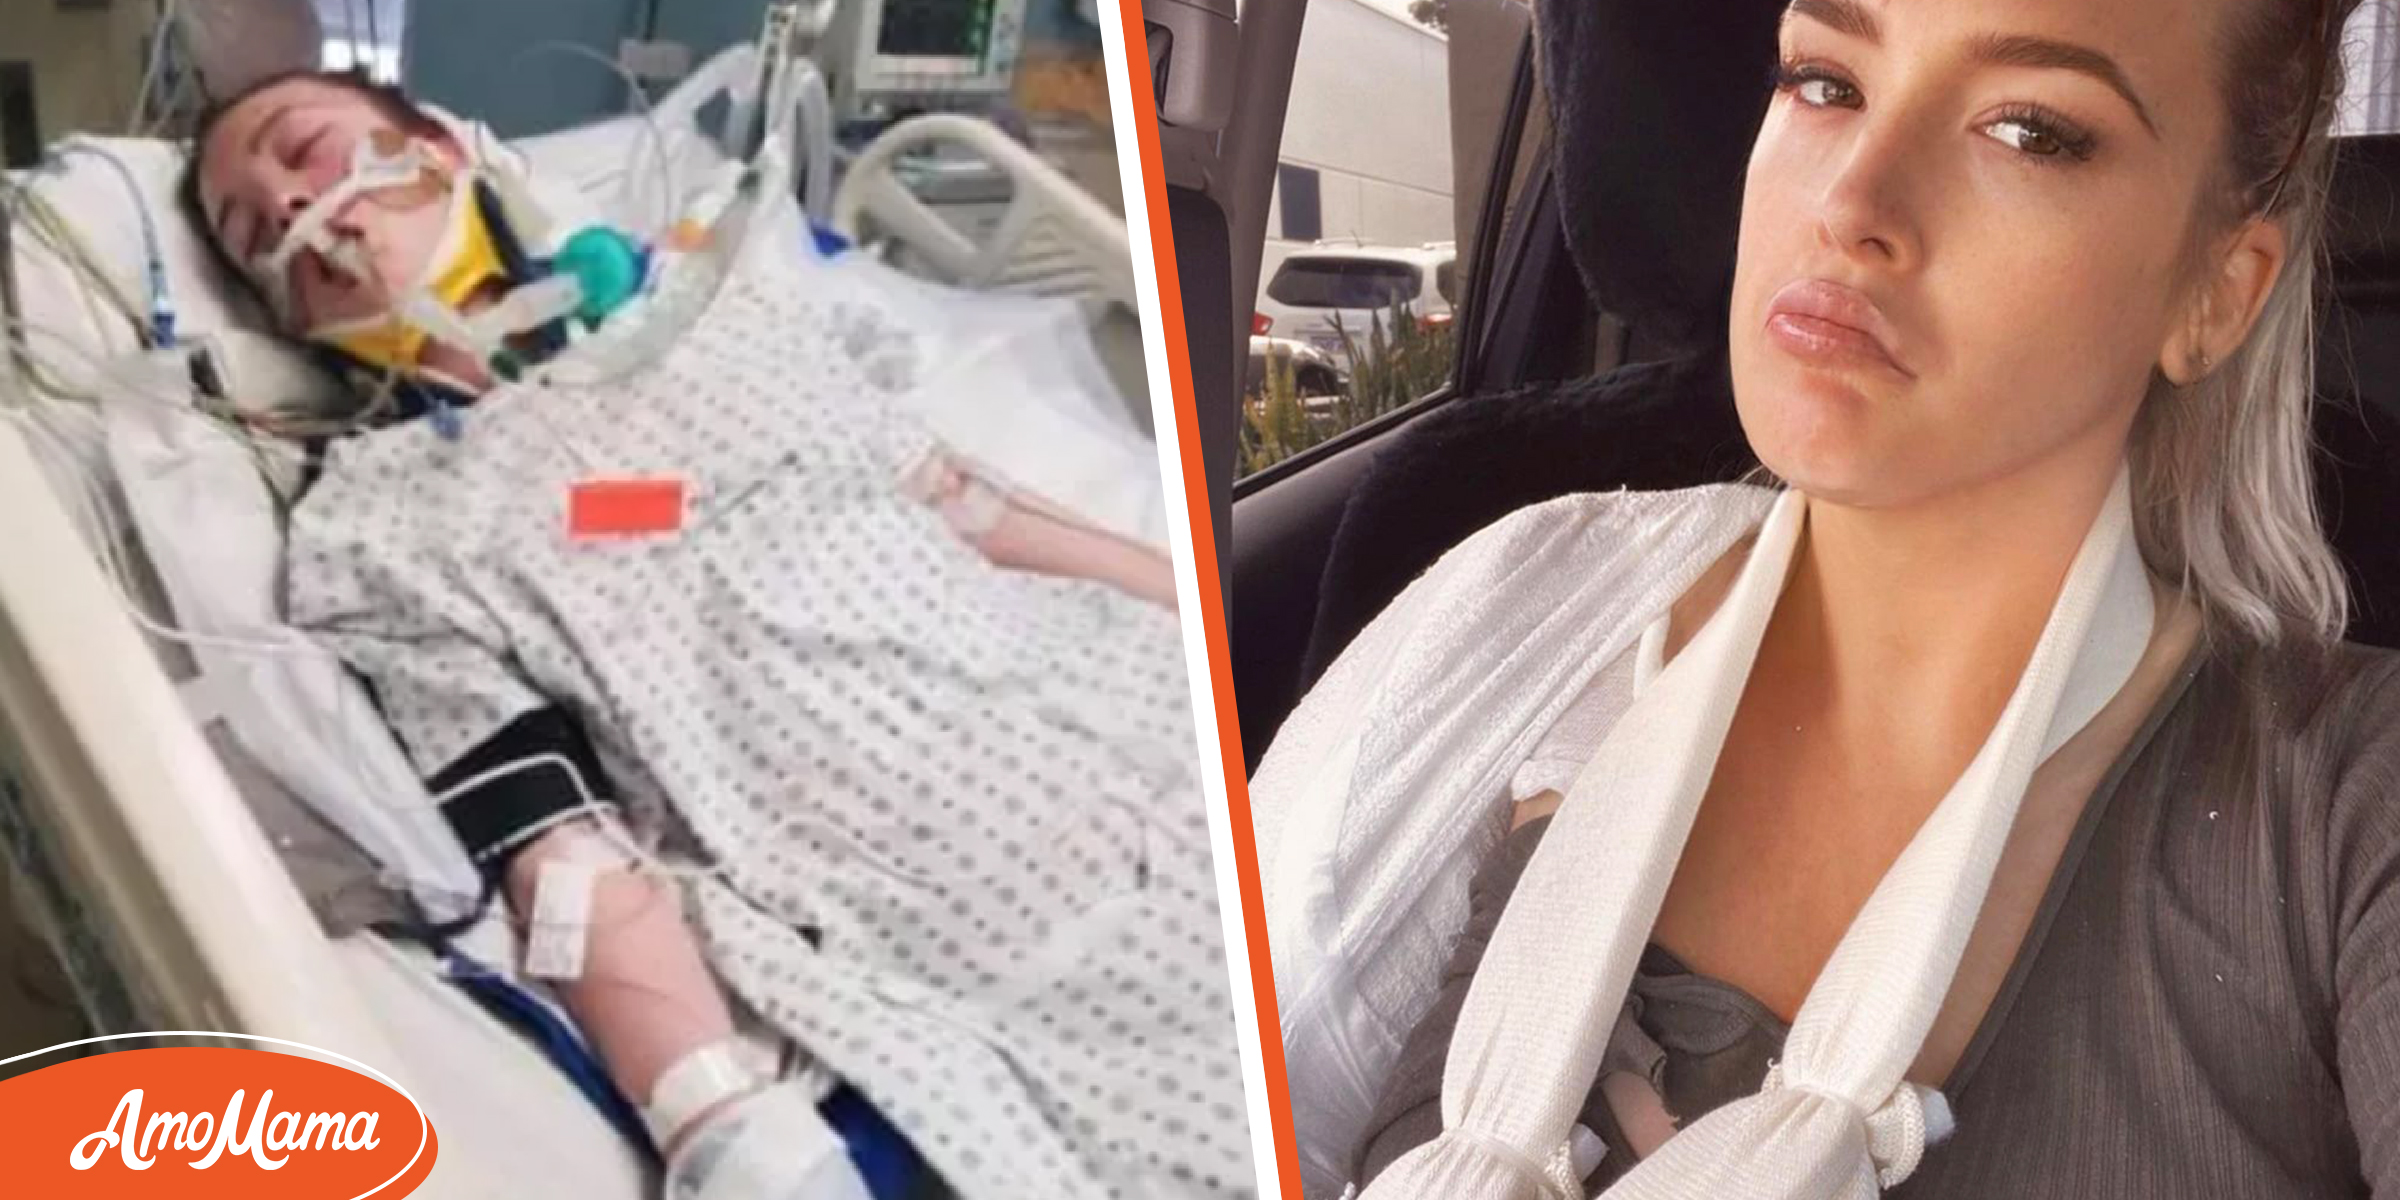 Une jeune femme se réveille d’un coma de 4 semaines pour découvrir que son fiancé l’a larguée pour une autre femme